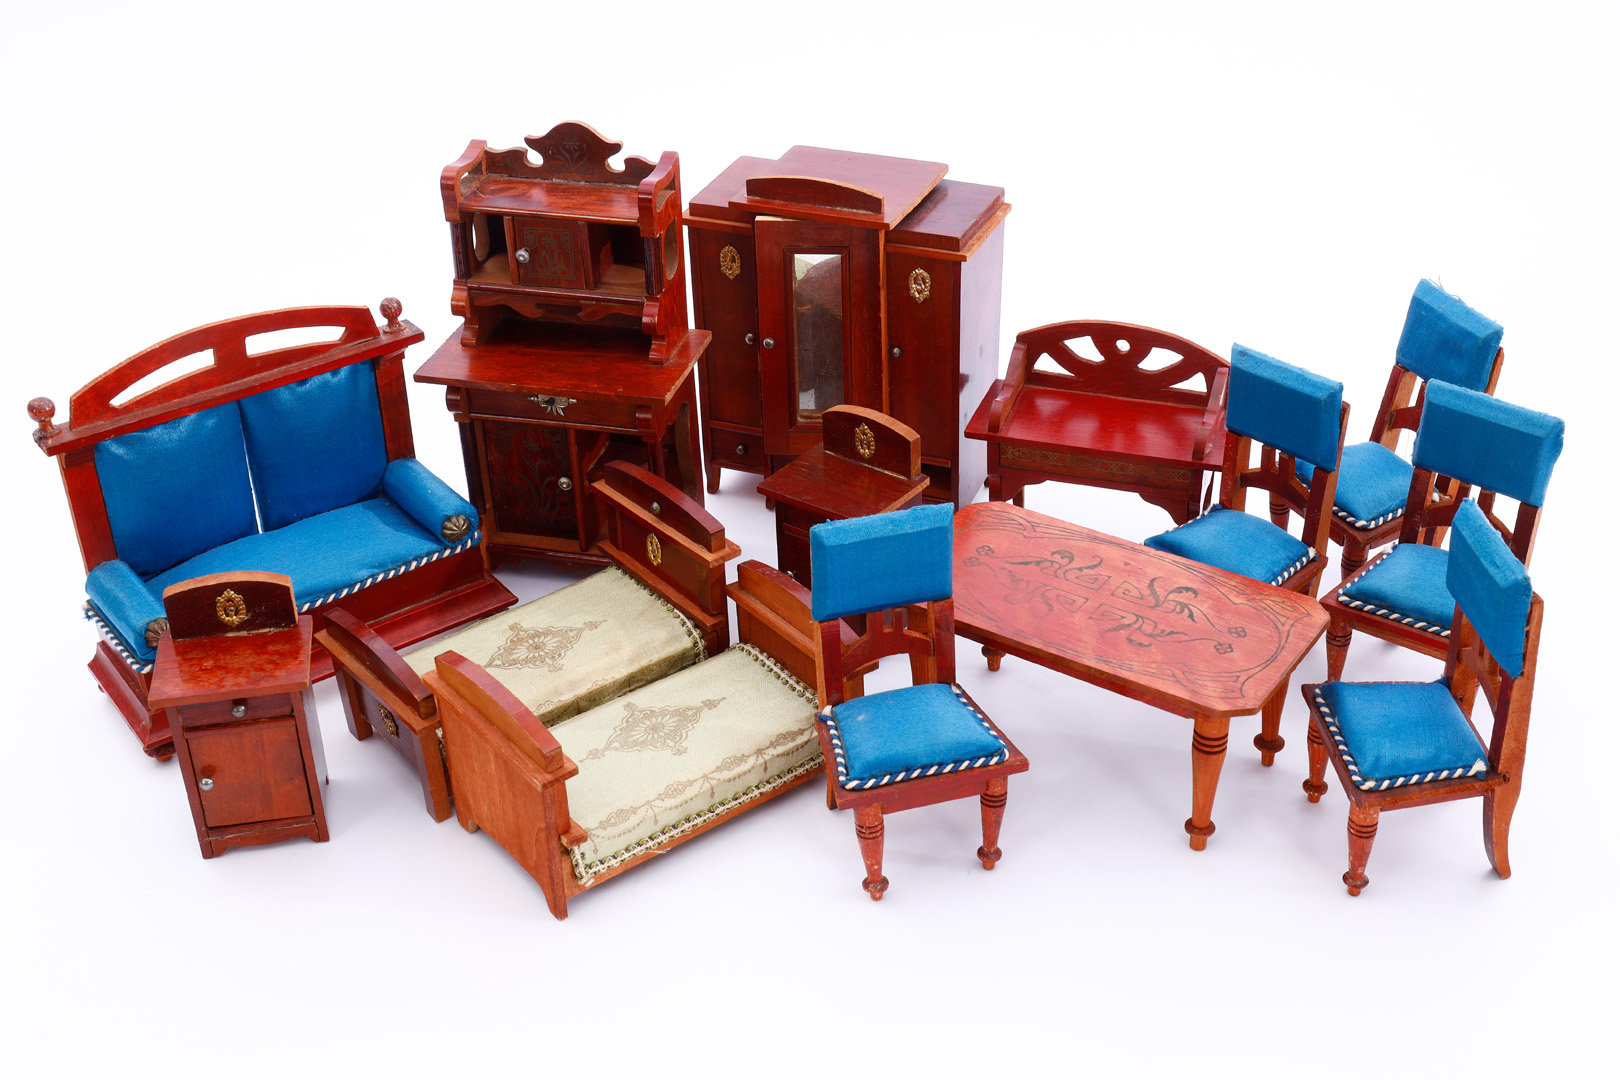 Jugendstil-Möbelprogramm um 1900, mit Salonmöbeln und Schlafzimmermöbeln, originale Stoffbezüge,